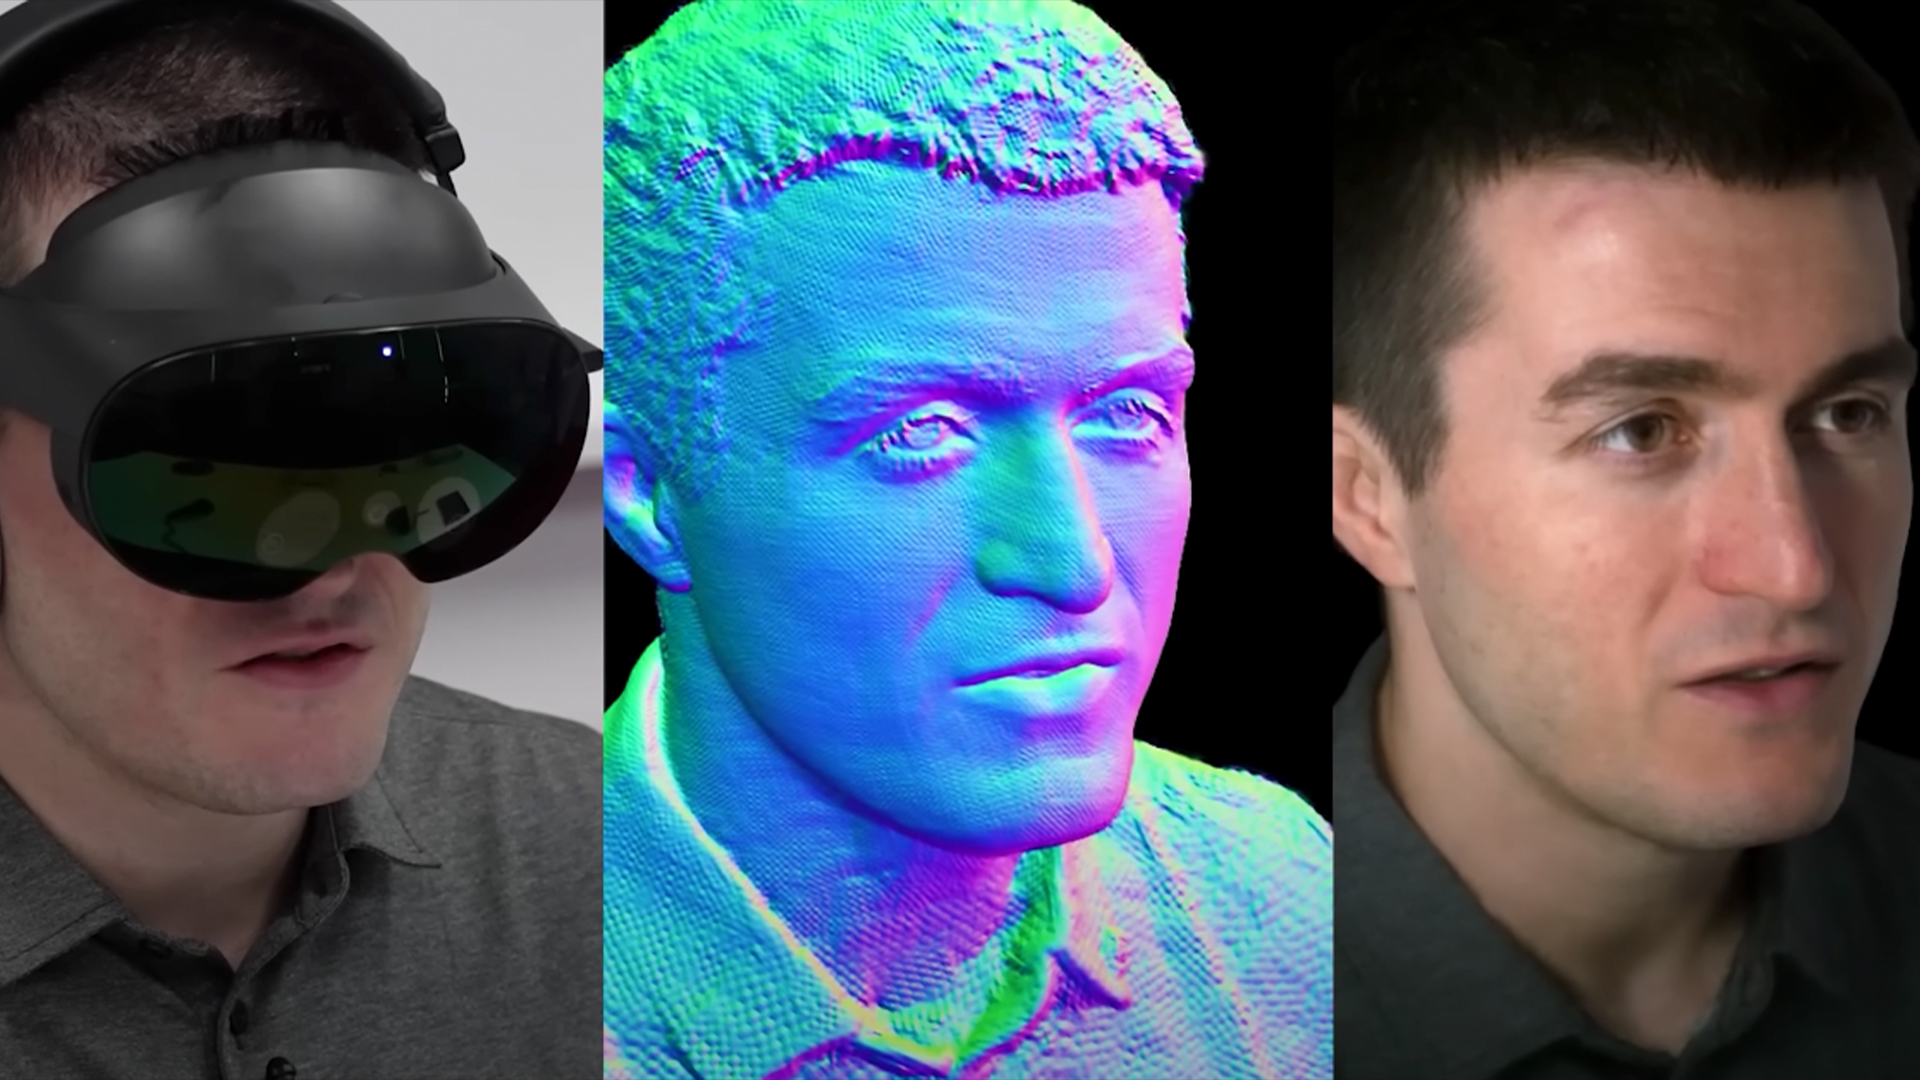 Lex Fridman's VR codec avatar